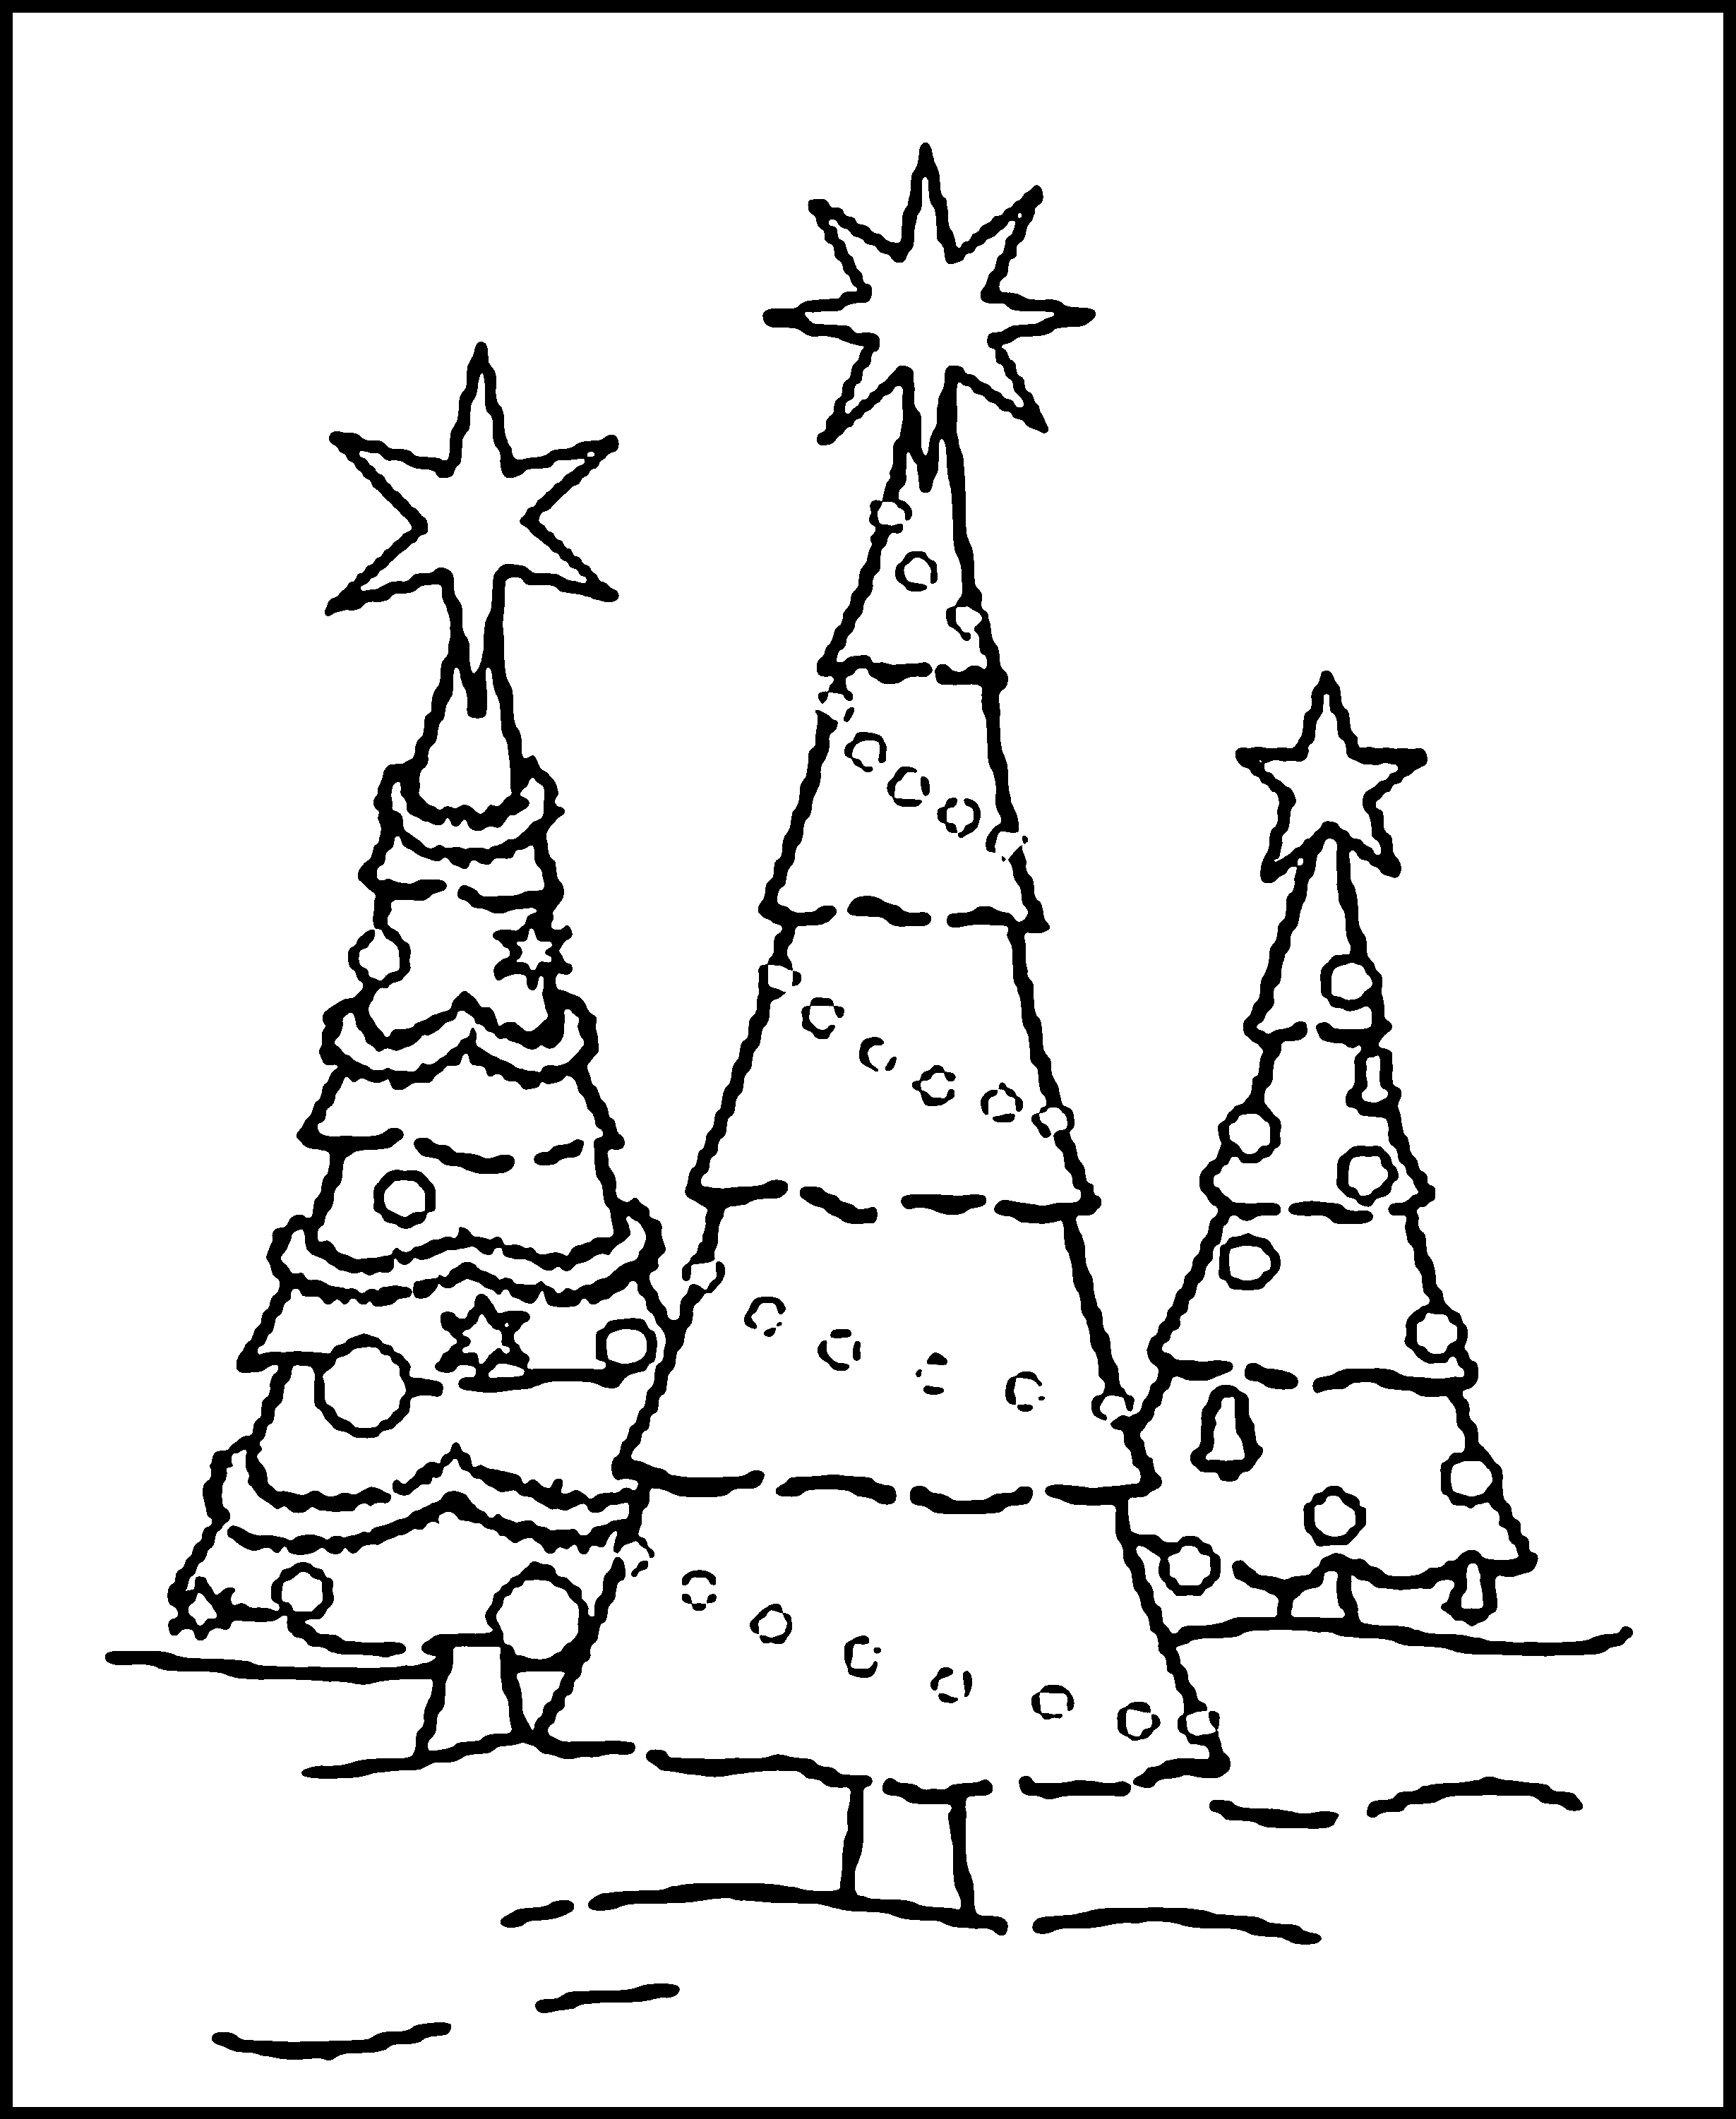 Christmas 2020: 40 Free Printable Christmas Tree Coloring Pages PDF